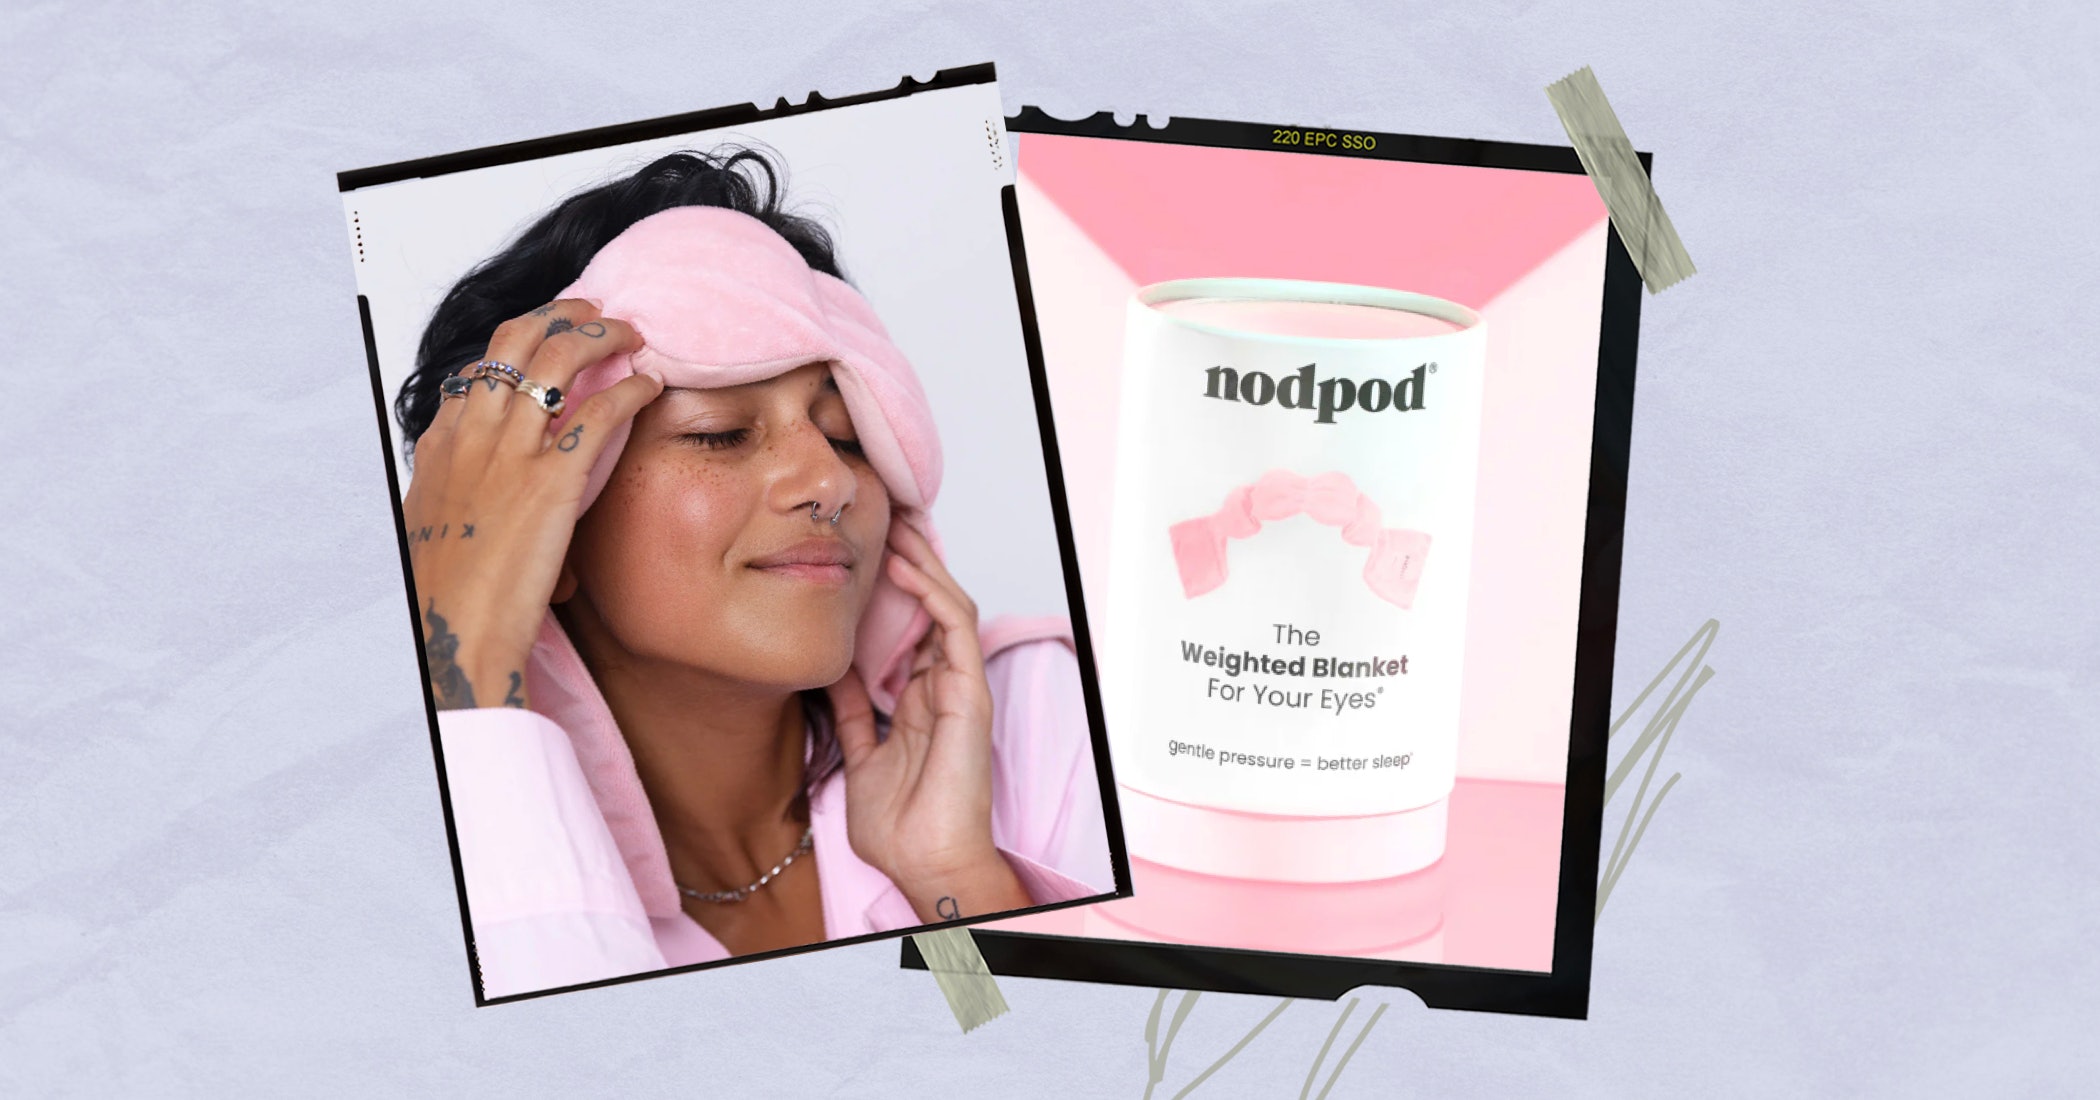 Nodpod Sleep Mask – nodpod